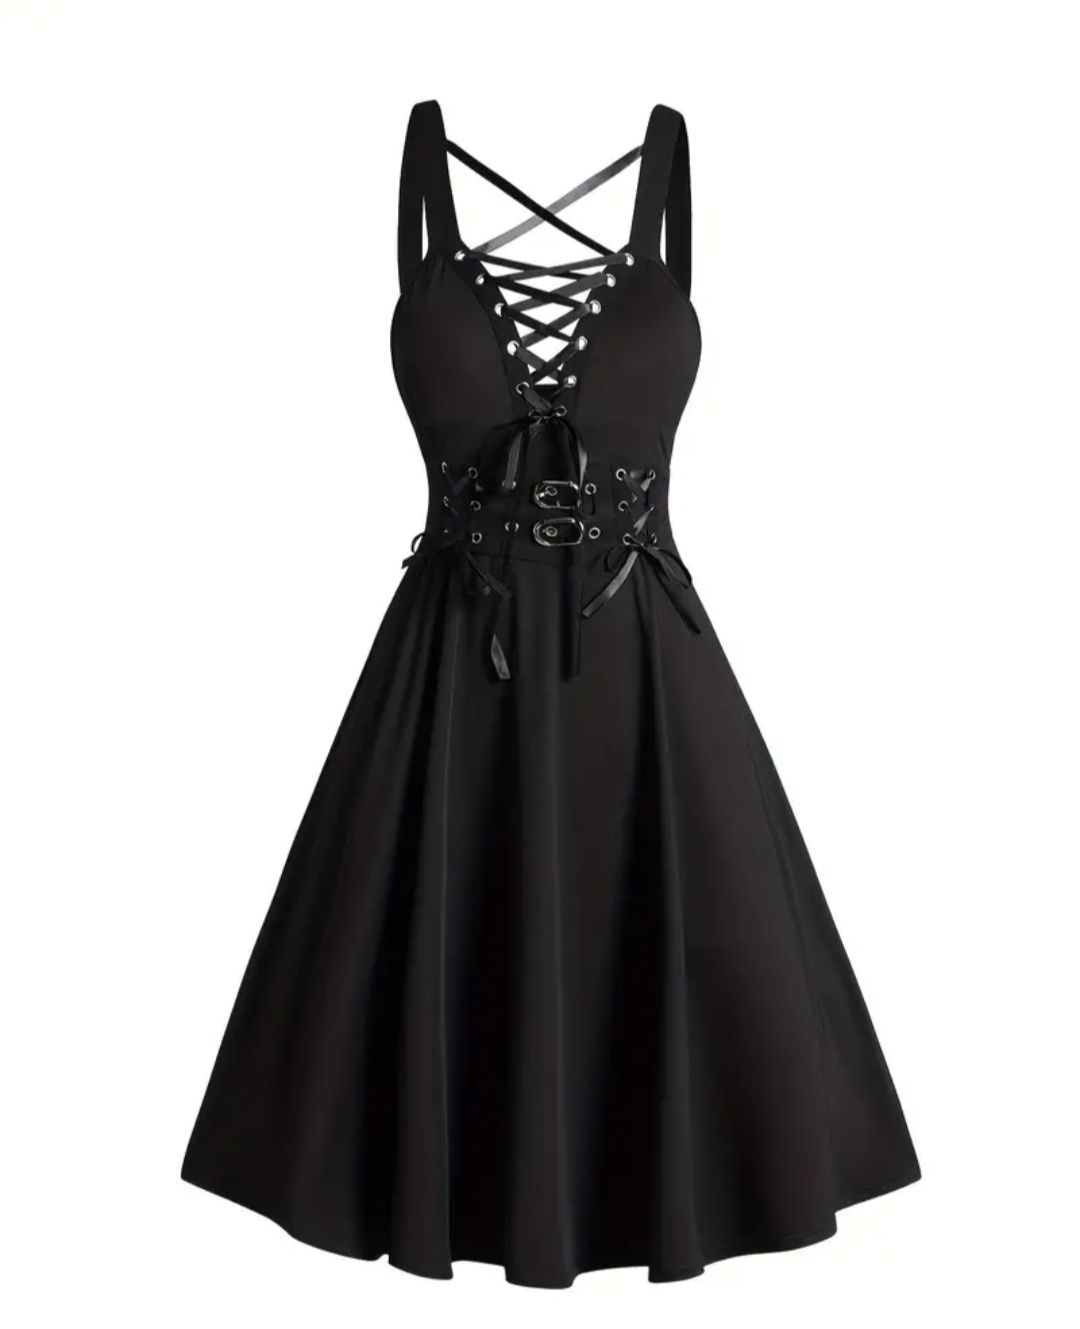 Suknia sukienka czarna M gotycka punkowa nowa!